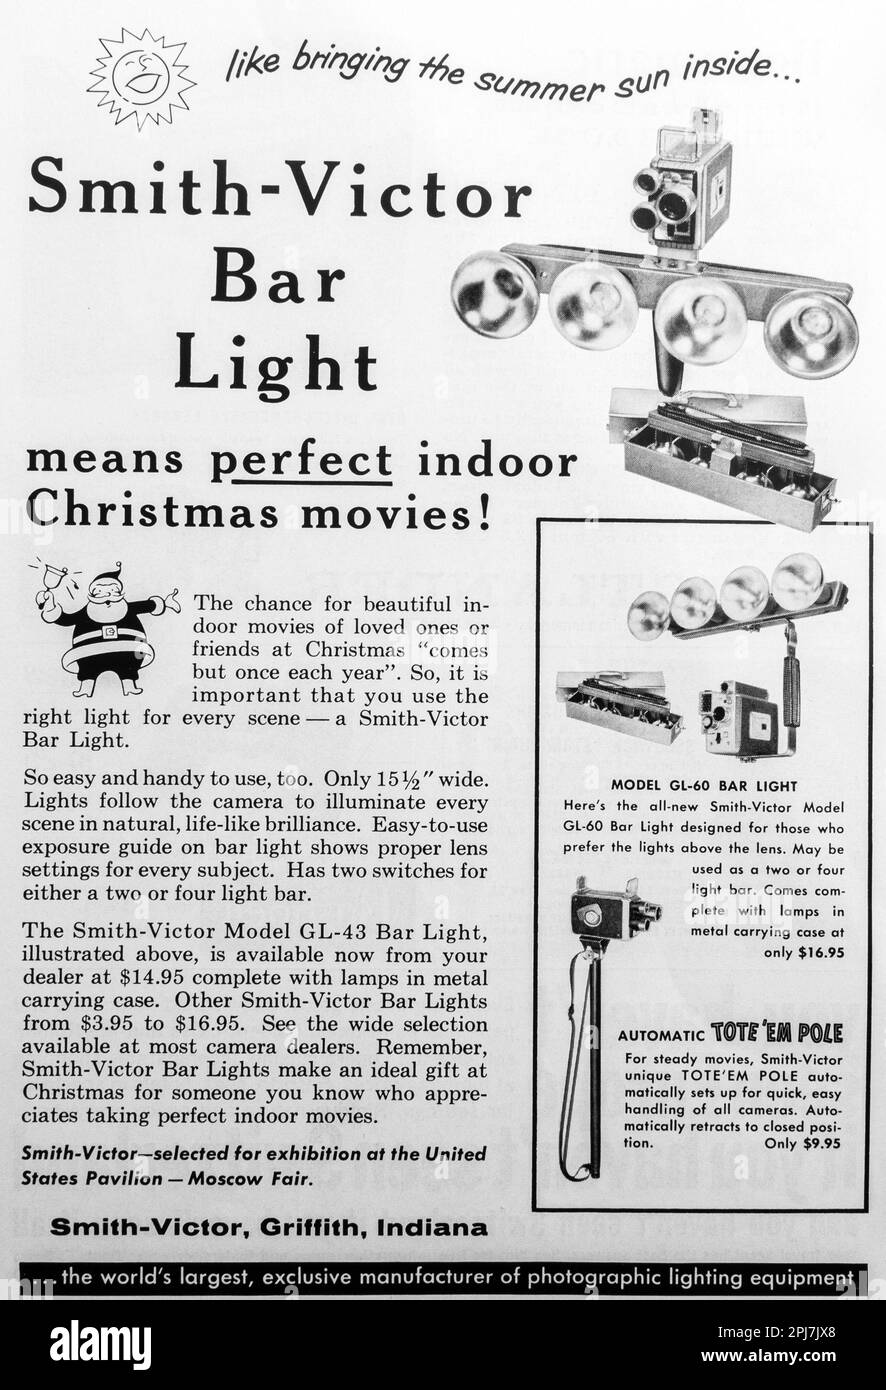 Smith-Victor Bar Light – Weihnachtsfilme in Innenräumen in einer Zeitschrift NatGeo, 1959 Stockfoto